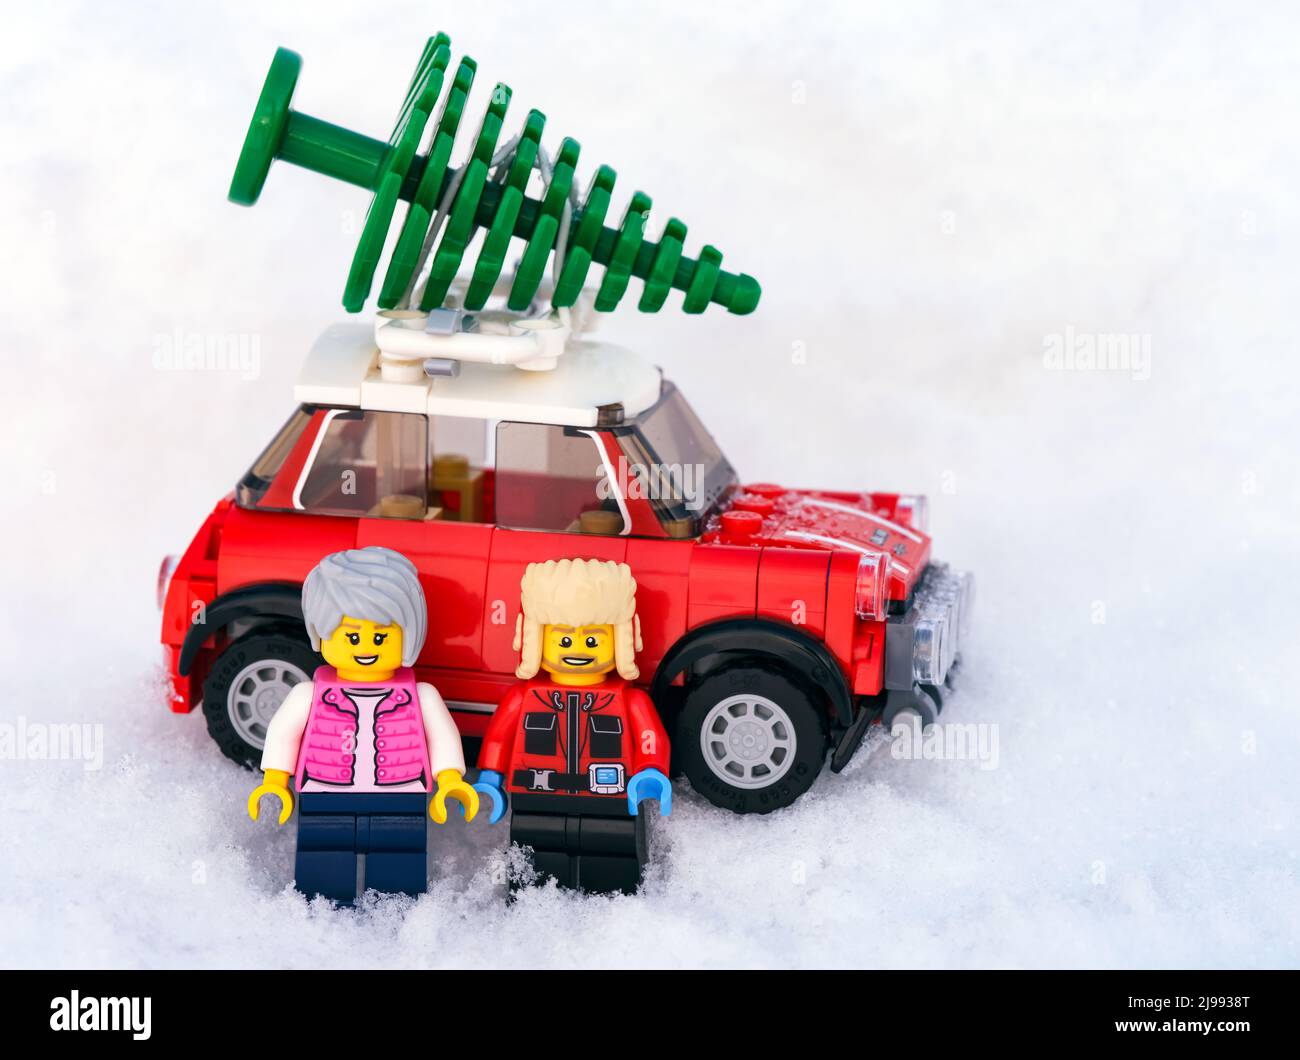 Tambow, Russische Föderation - 19. Januar 2022 zwei Lego-Minifiguren stehen vor einem roten Auto, auf dem ein Weihnachtsbaum steht. Schneehintergrund Stockfoto